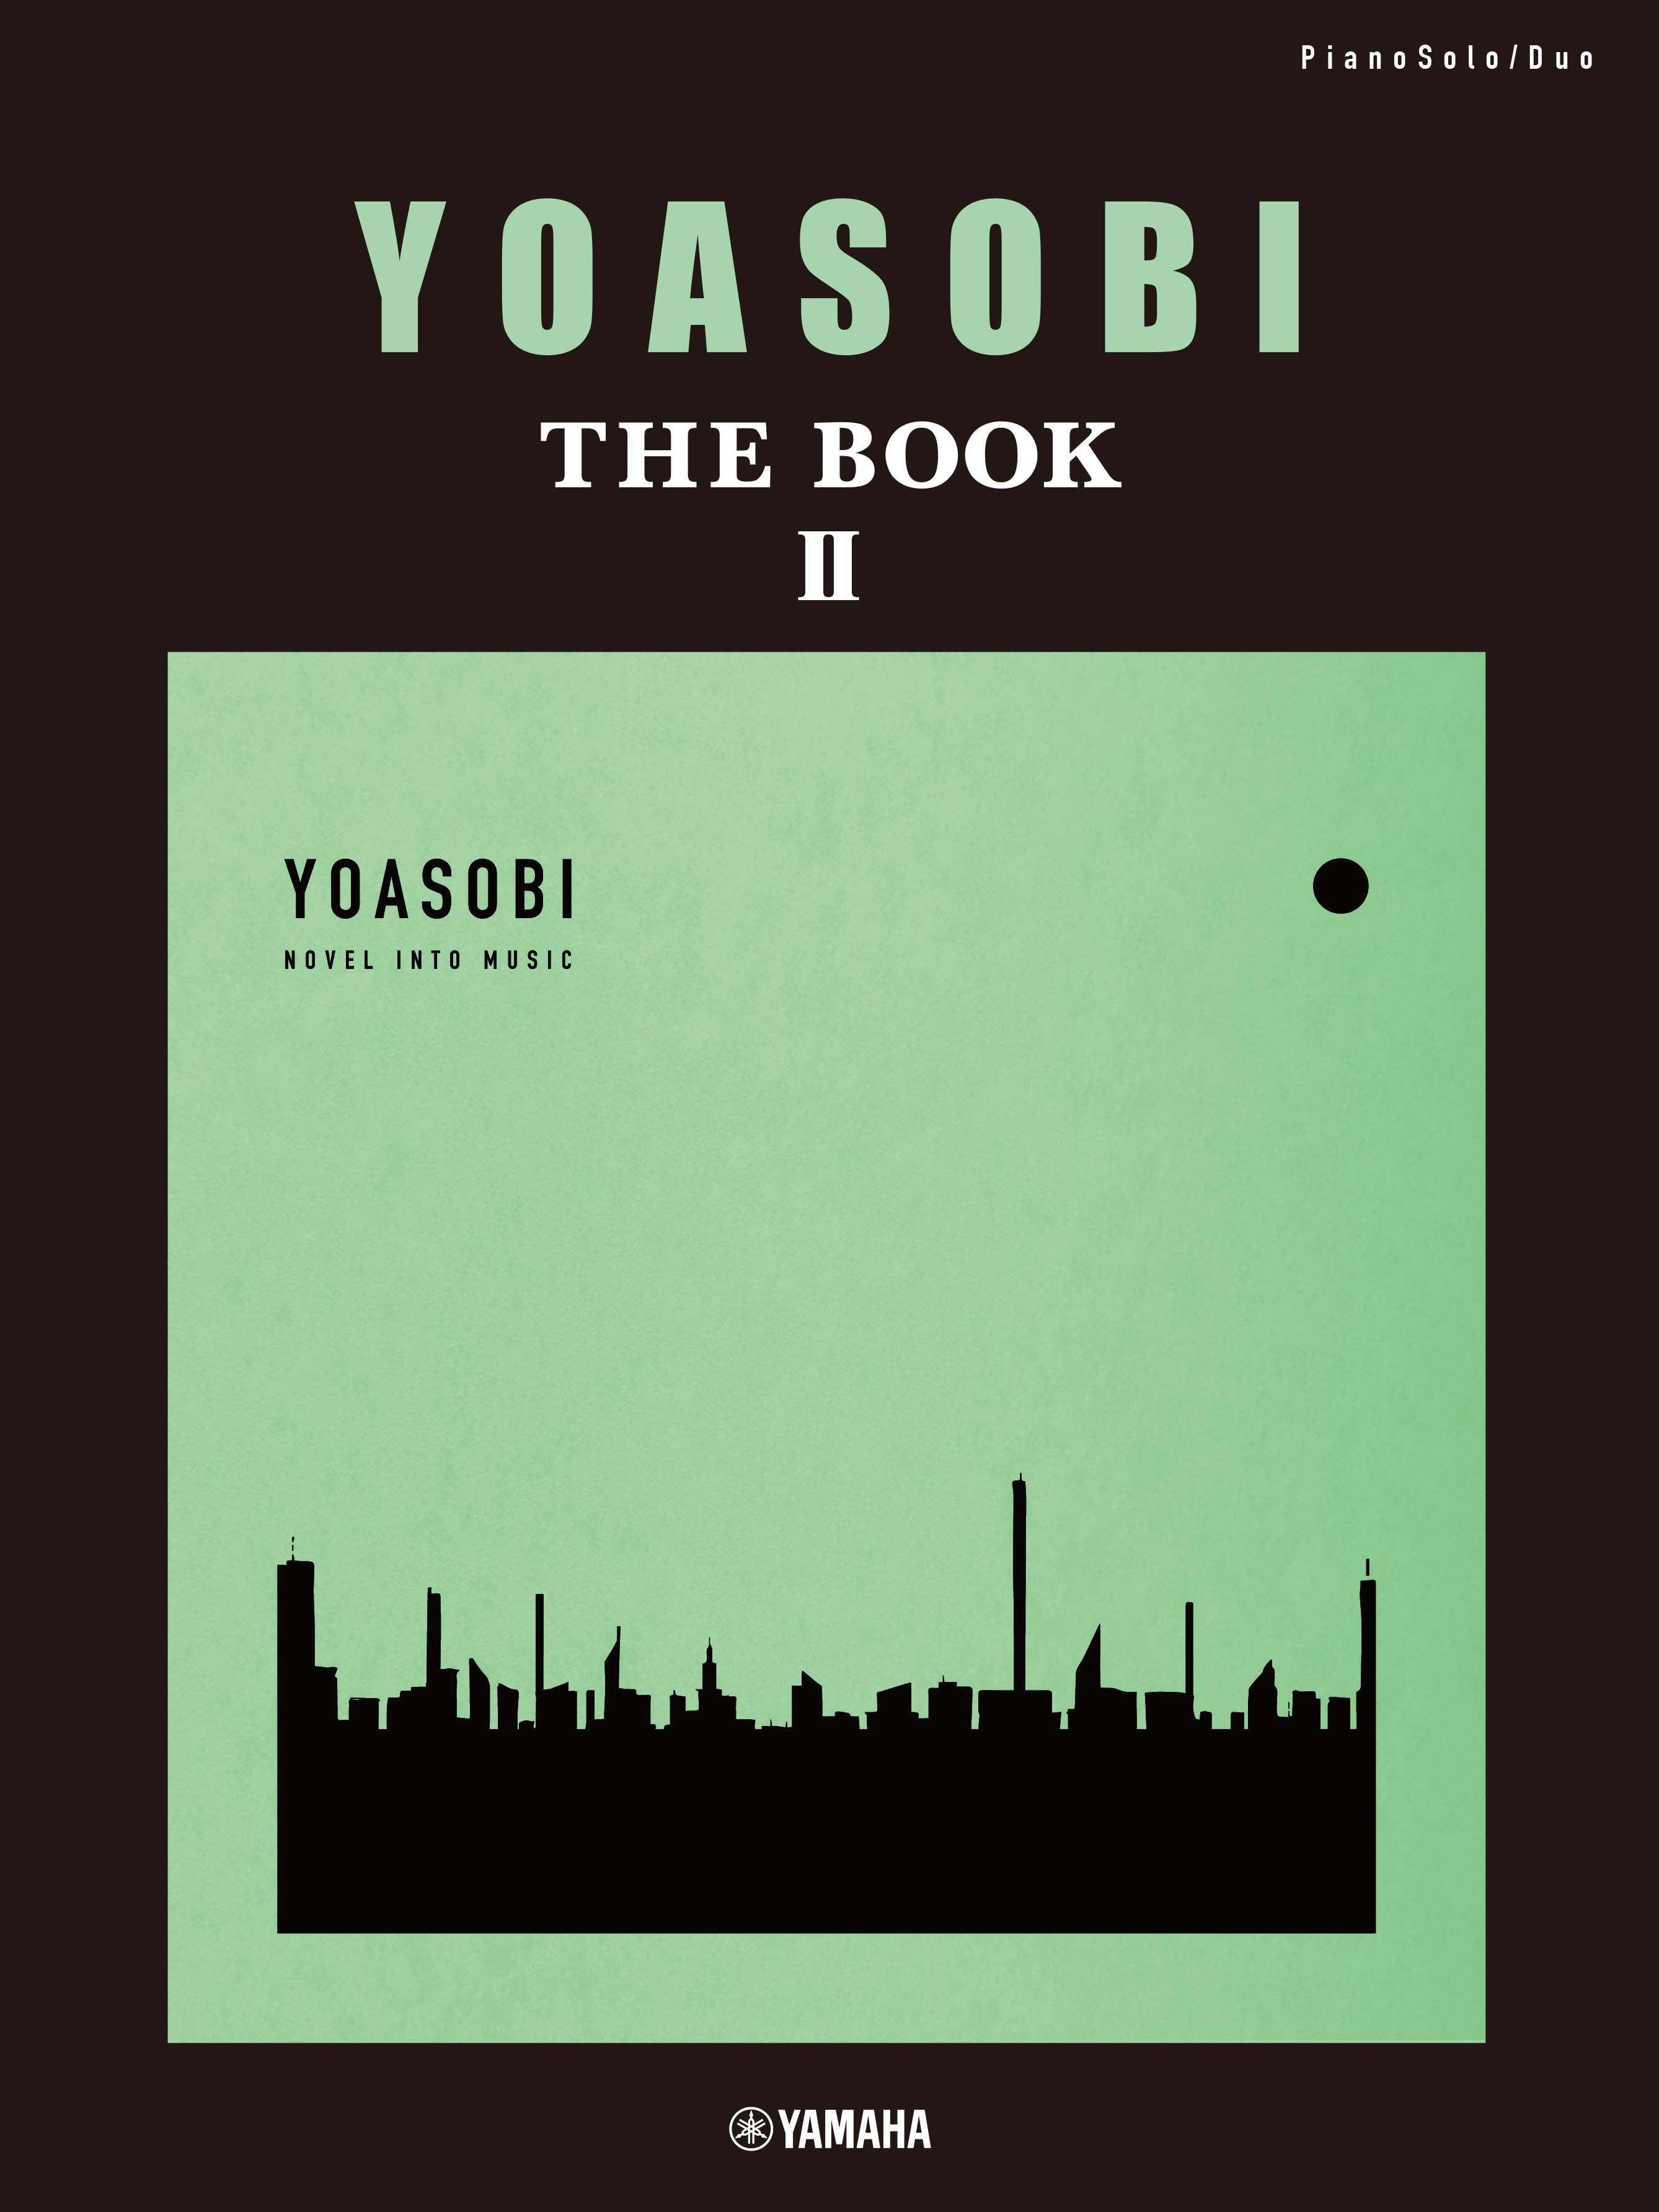 ピアノソロ・連弾 YOASOBI『THE BOOK 2』 | ヤマハの楽譜通販サイト ...